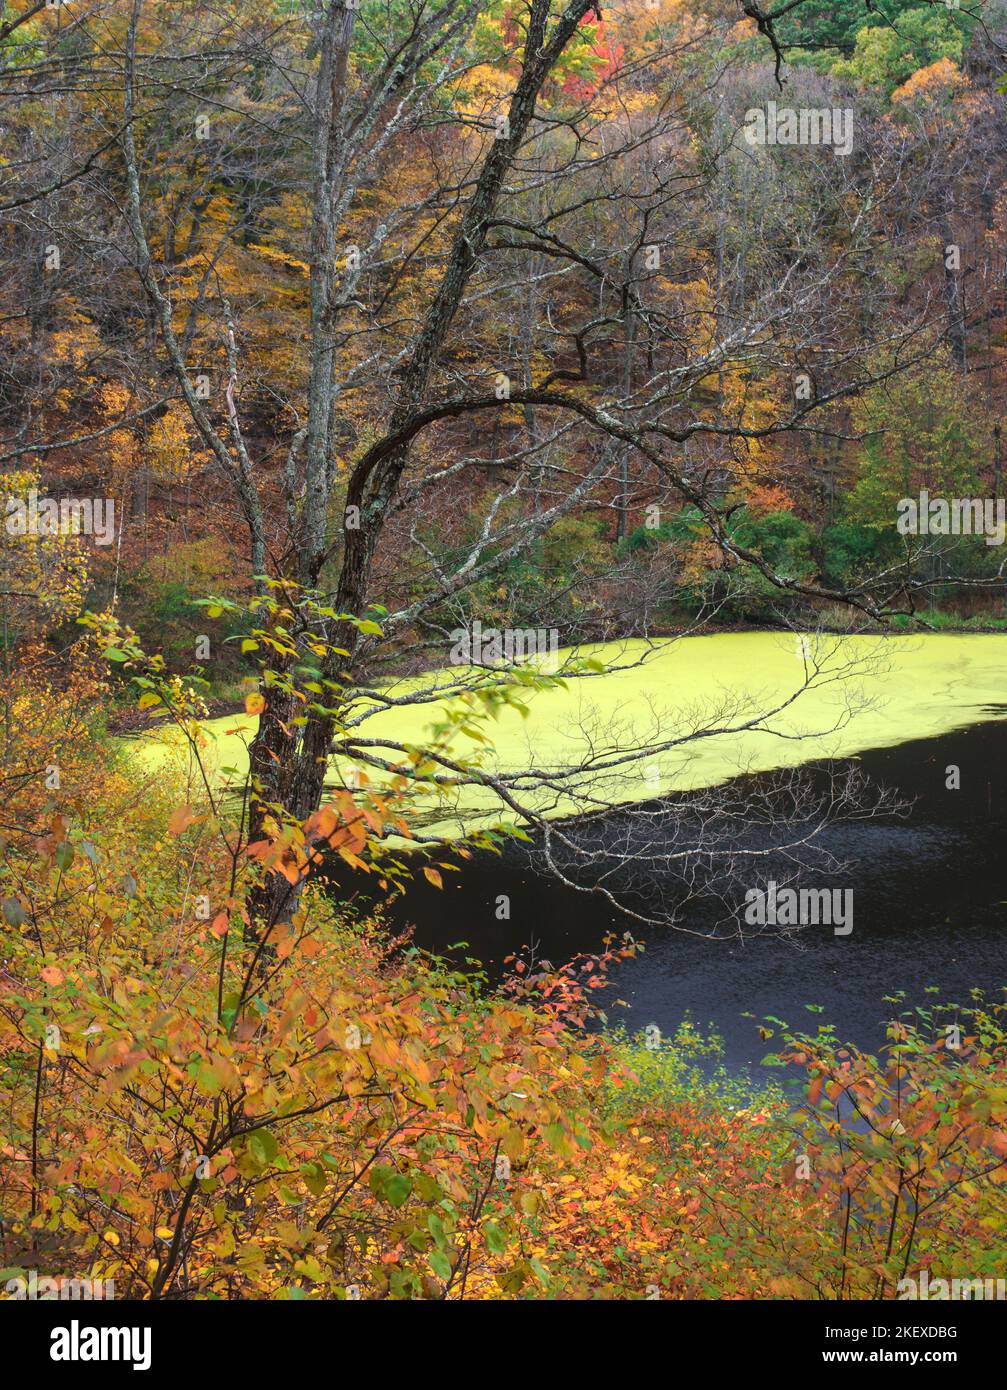 Greenbush Kettle è un lago bollitore nella Kettle Moraine state Forest, nella contea di Manitowoc, Wisconsin, mostrato qui in autunno. Foto Stock